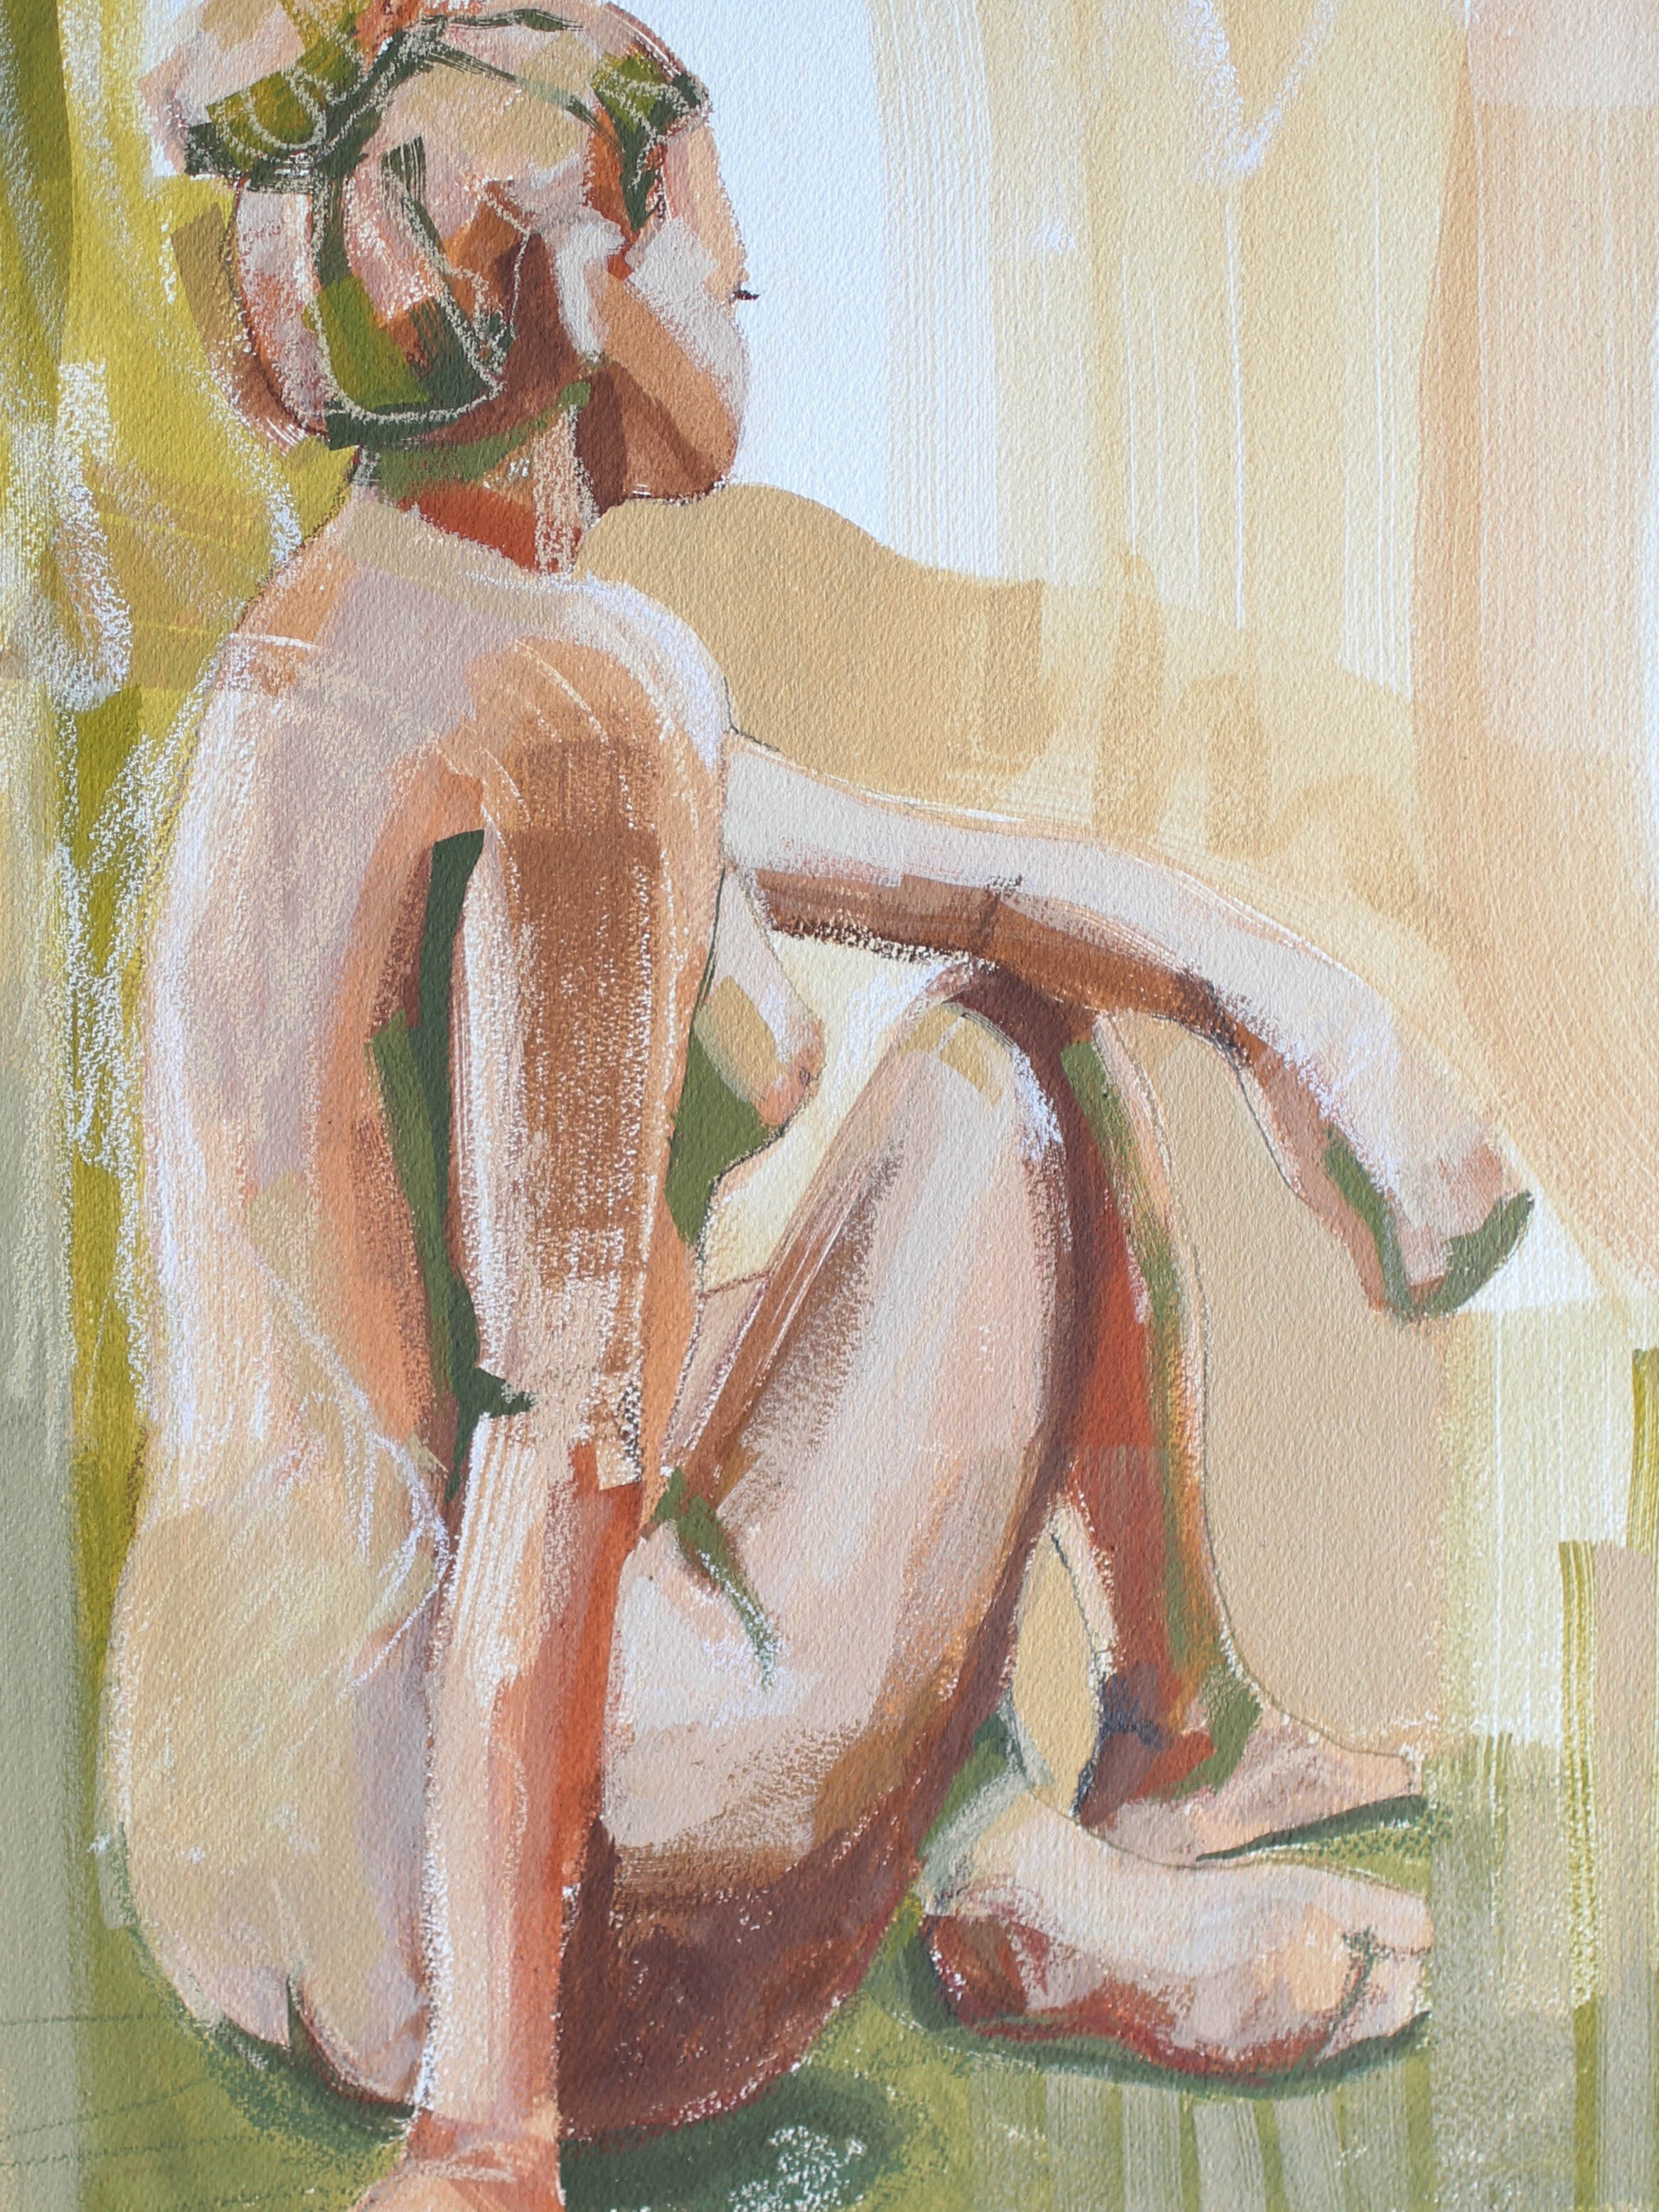 THE FABRIC OF HER BEING 12X16 Katherine Corden Art  #abstractfigure #figurepainting #figurestudy